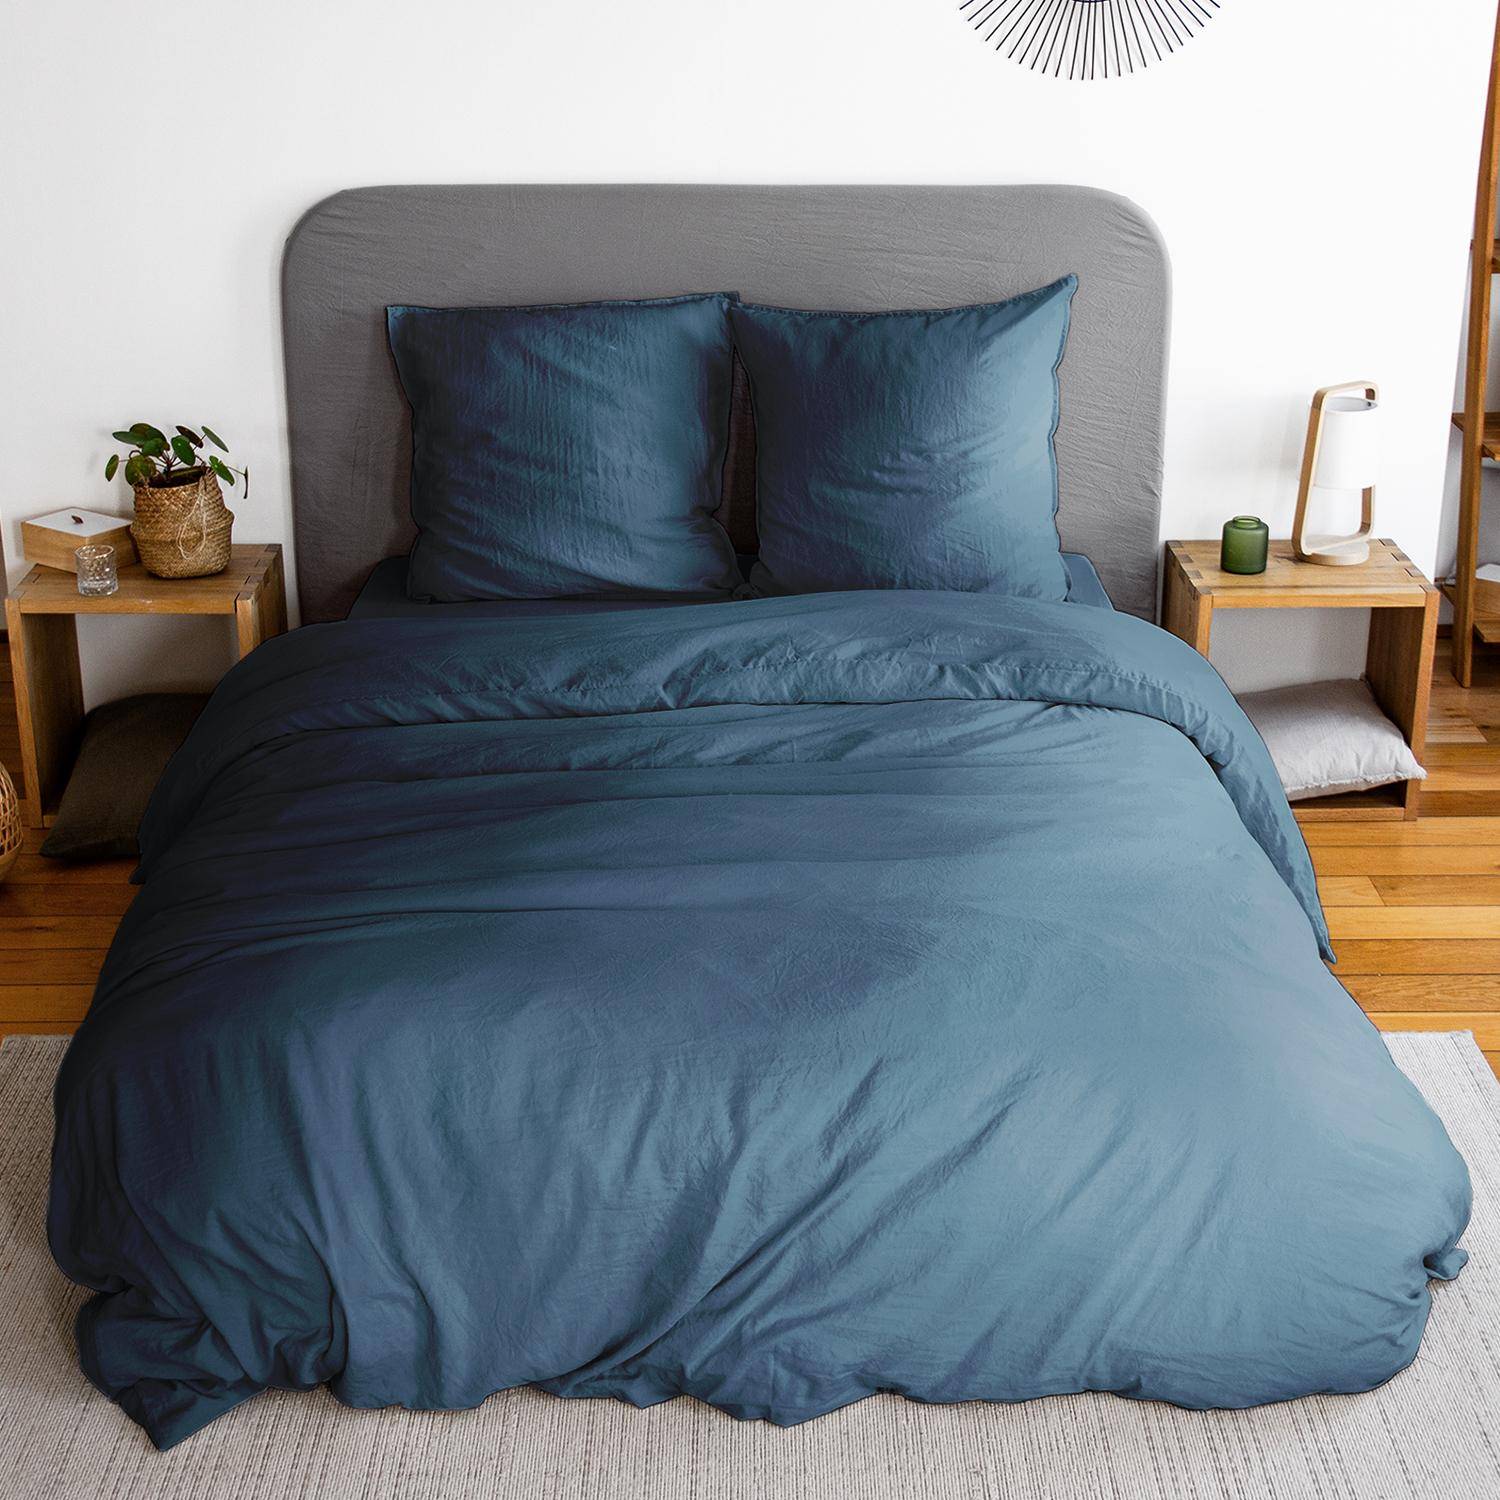 Parure de lit en microfibre lavée, bleu nuit, 240 x 220cm pour lit 2 places avec 1 housse de couette et 2 taies d'oreillers Photo1